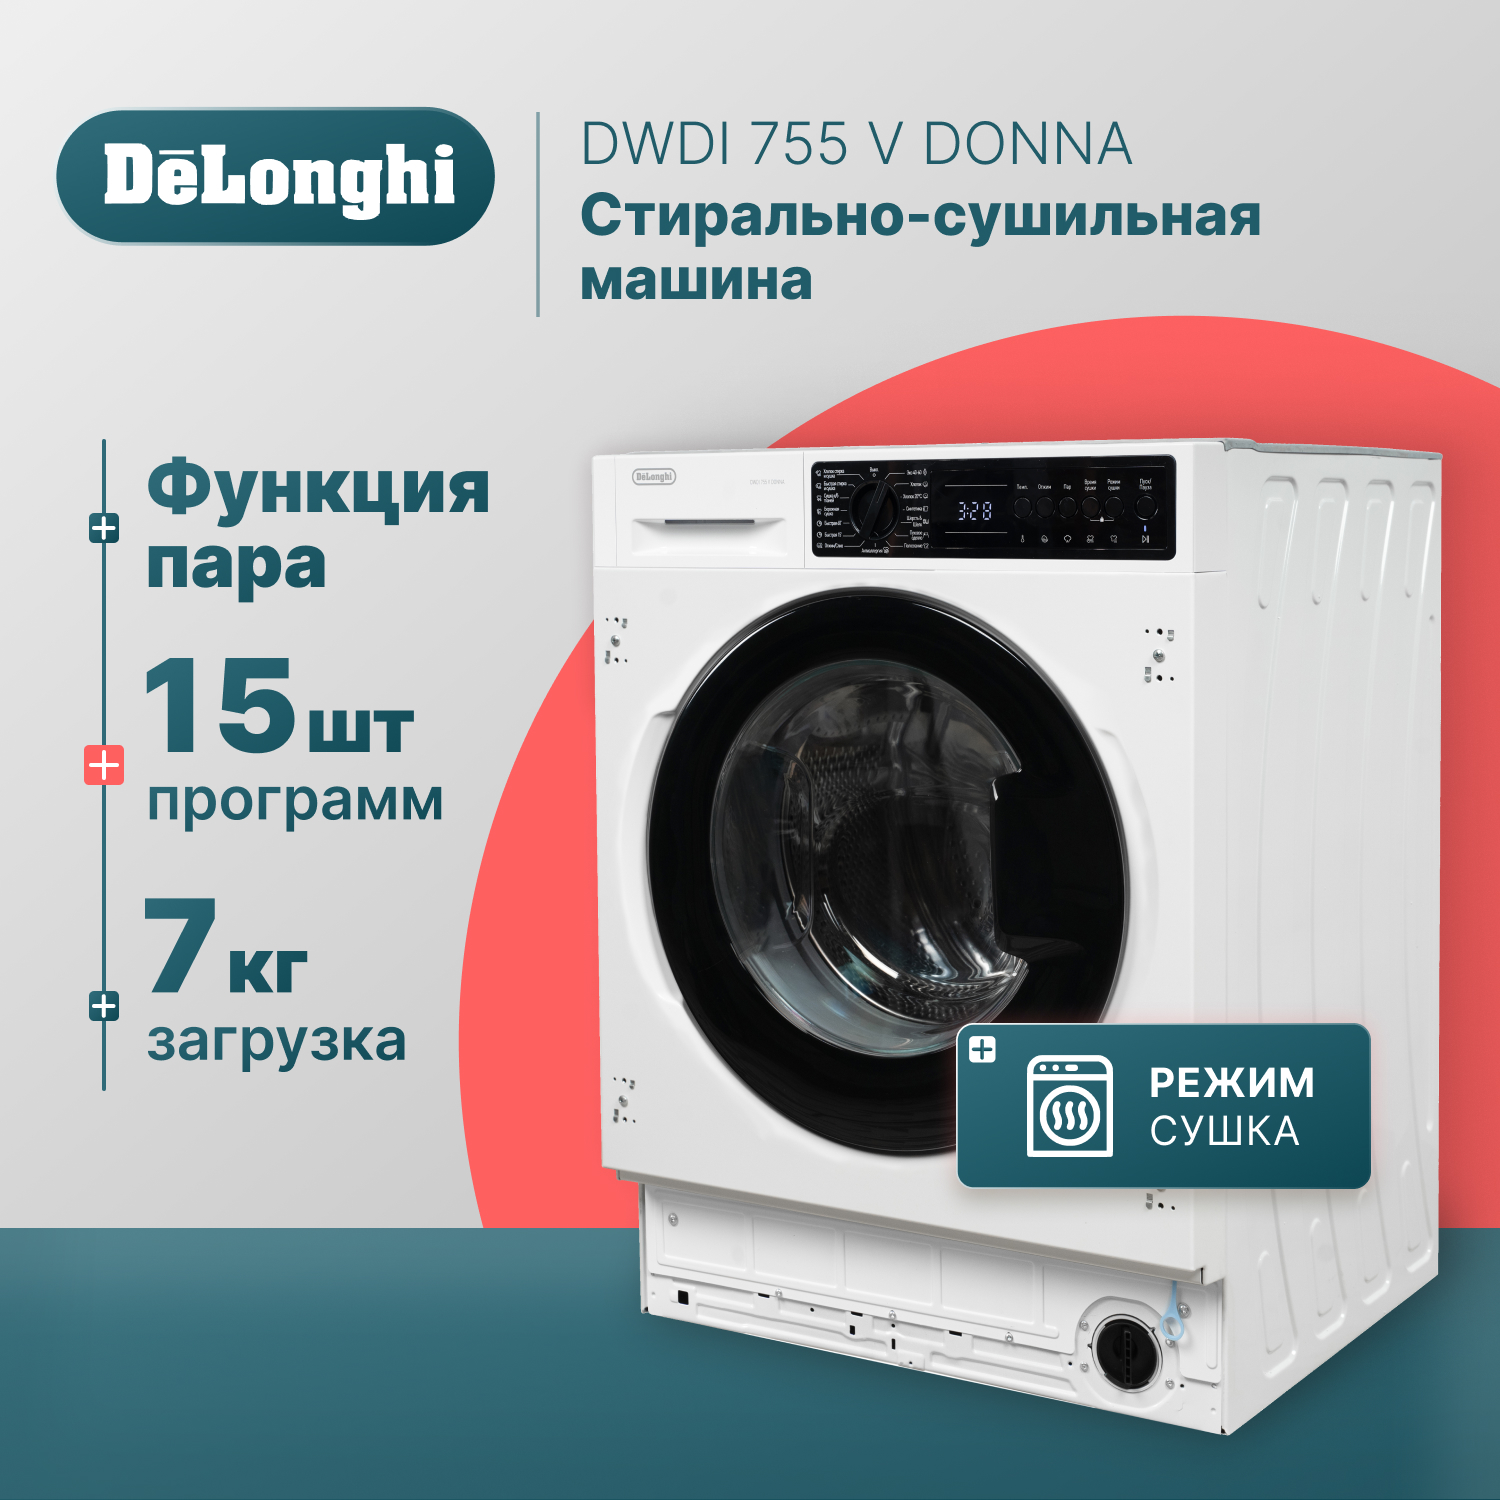 Встраиваемая стиральная машина Delonghi DWDI 755 V DONNA встраиваемая стиральная машина с сушкой delonghi dwdi 755 v donna